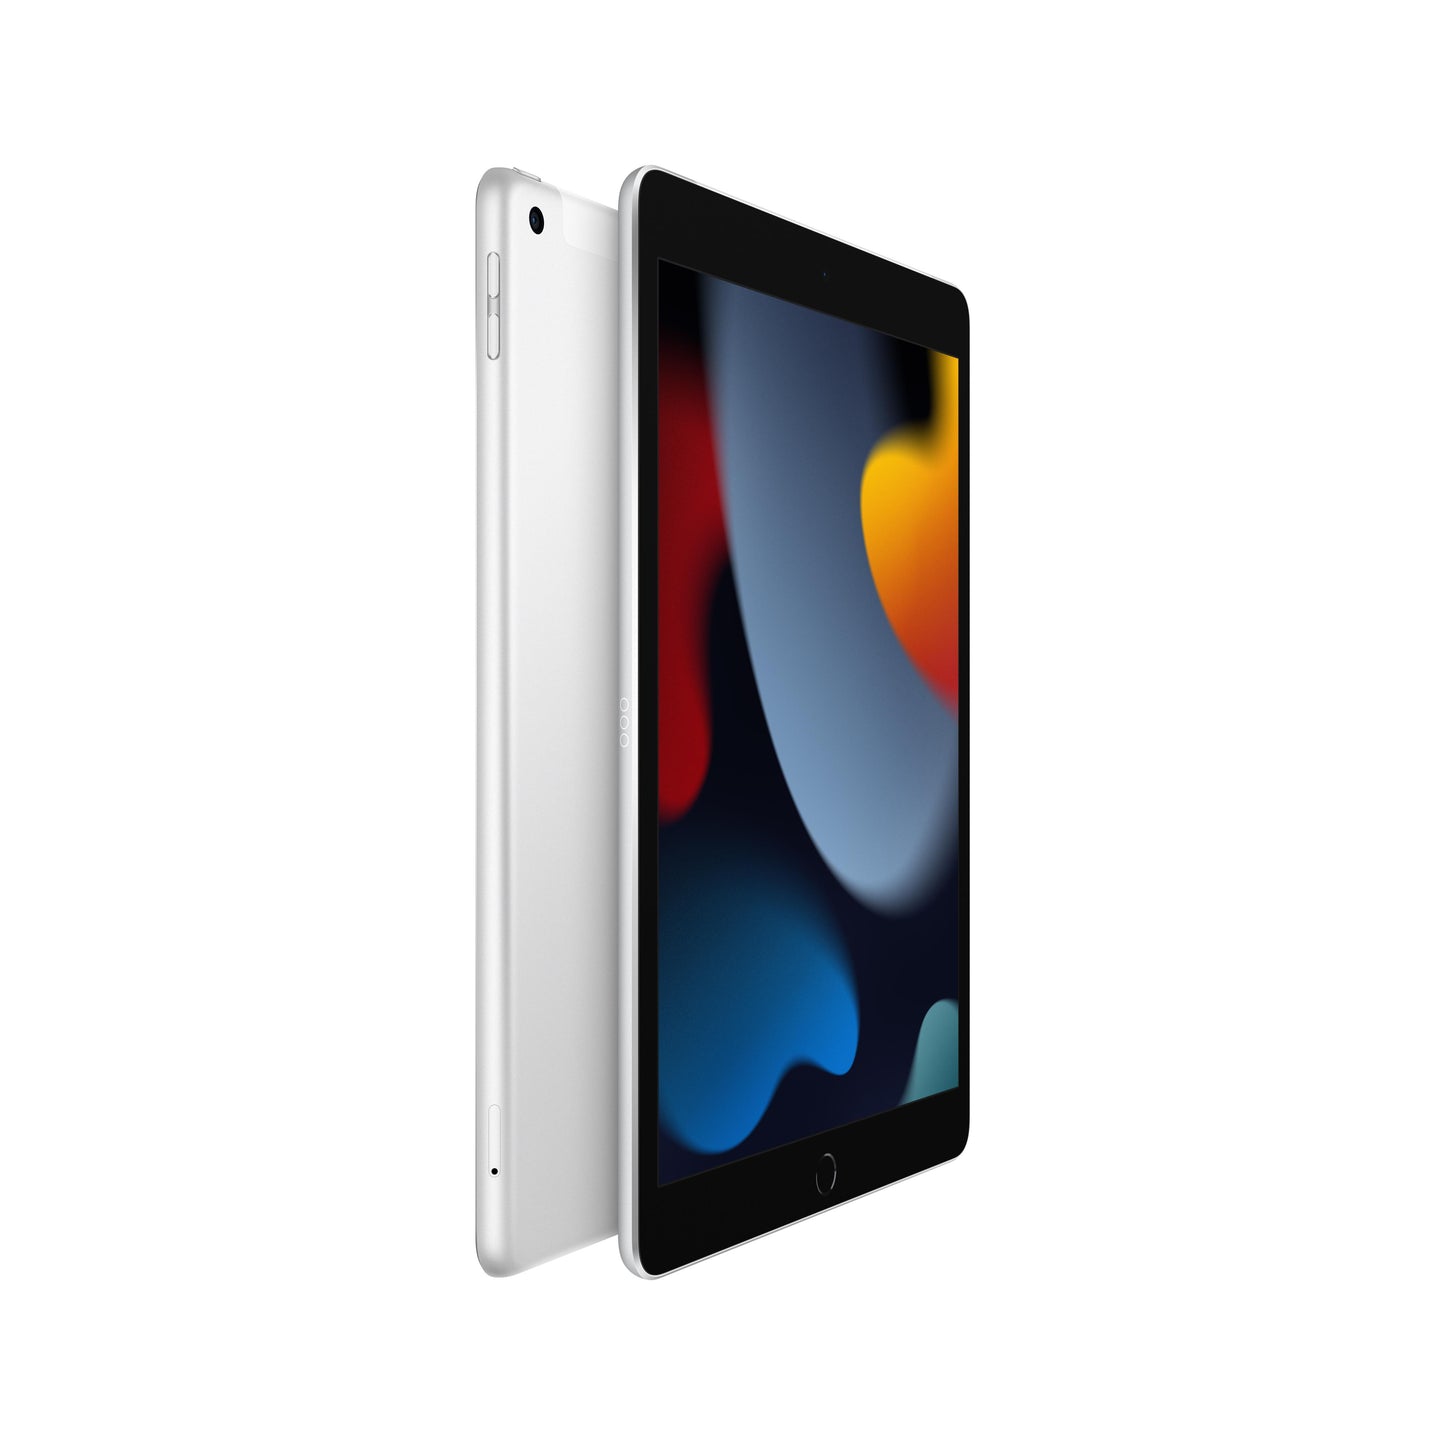 2021 10.2-inch iPad Wi-Fi + Cellular 256GB - Silver (9th generation)